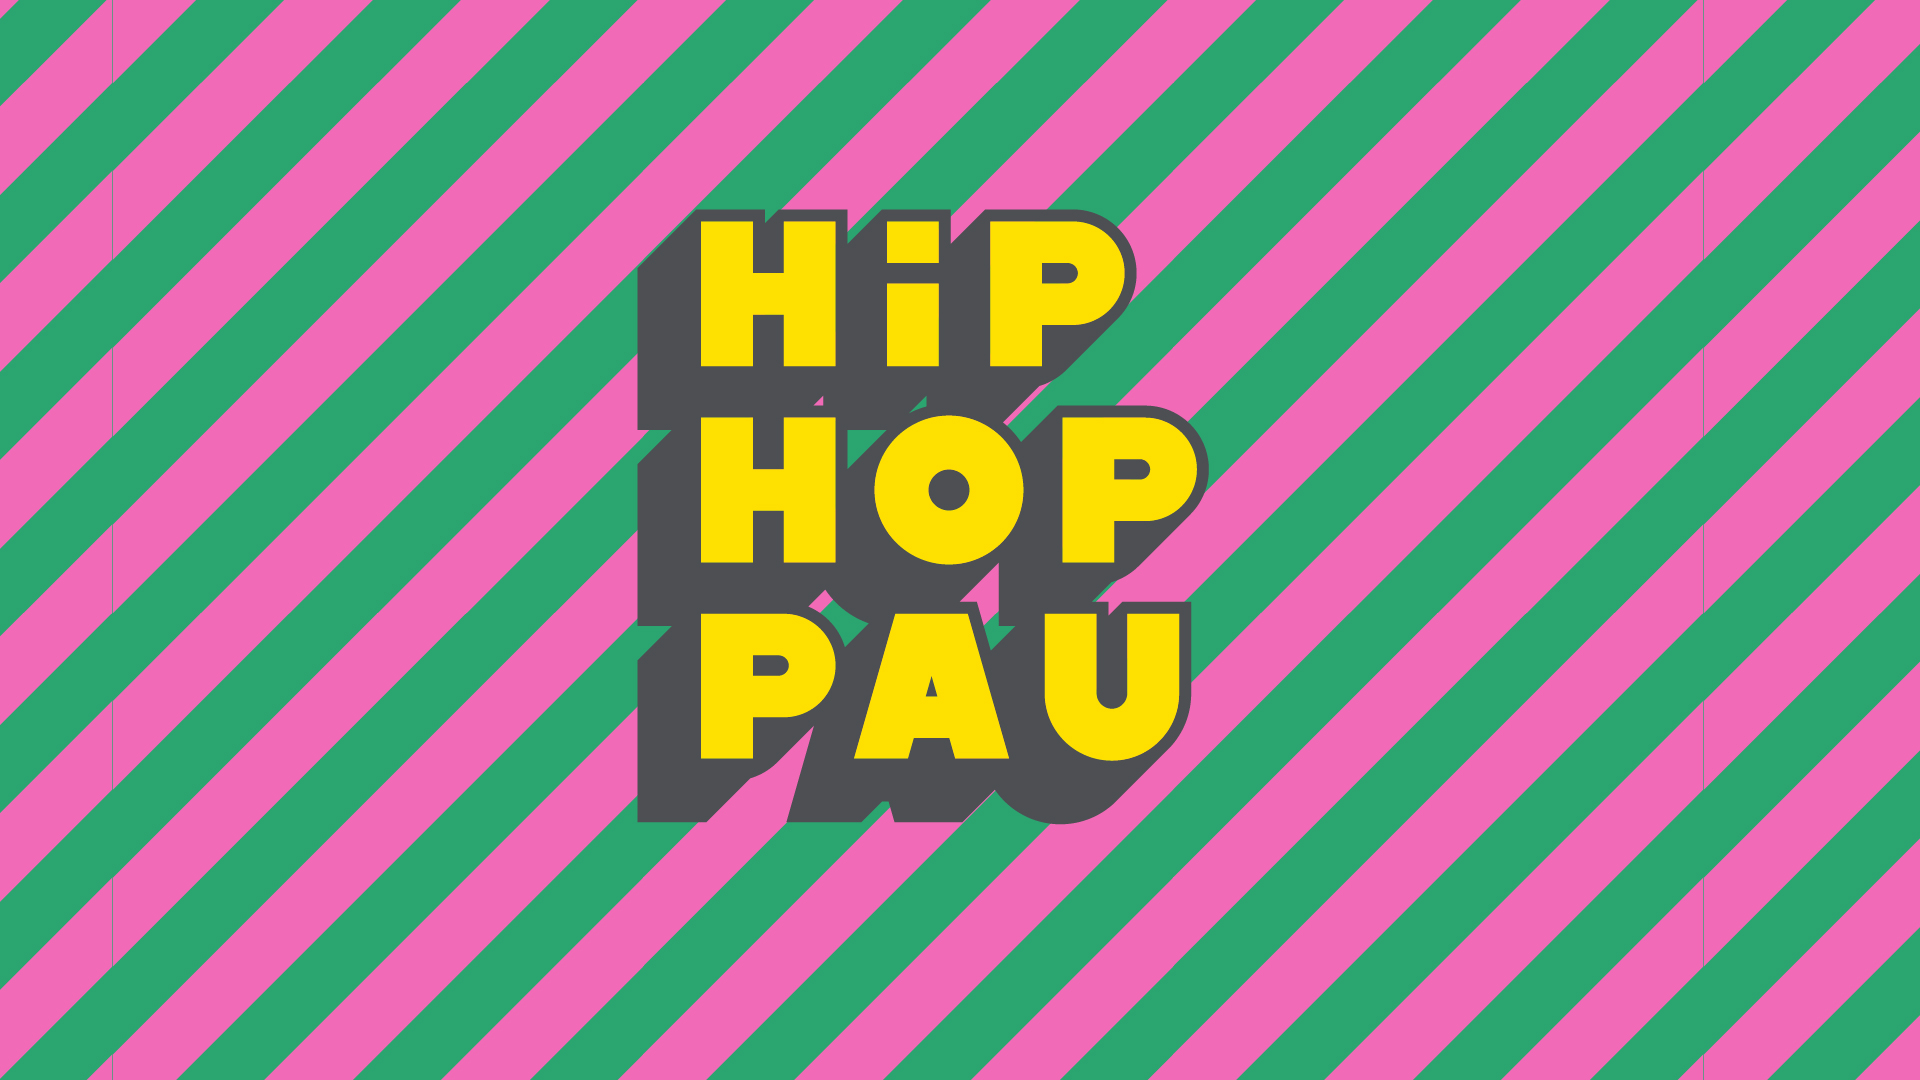 Abierta la séptima edición del concurso #HipHopPau para jóvenes de 12 a 25 años